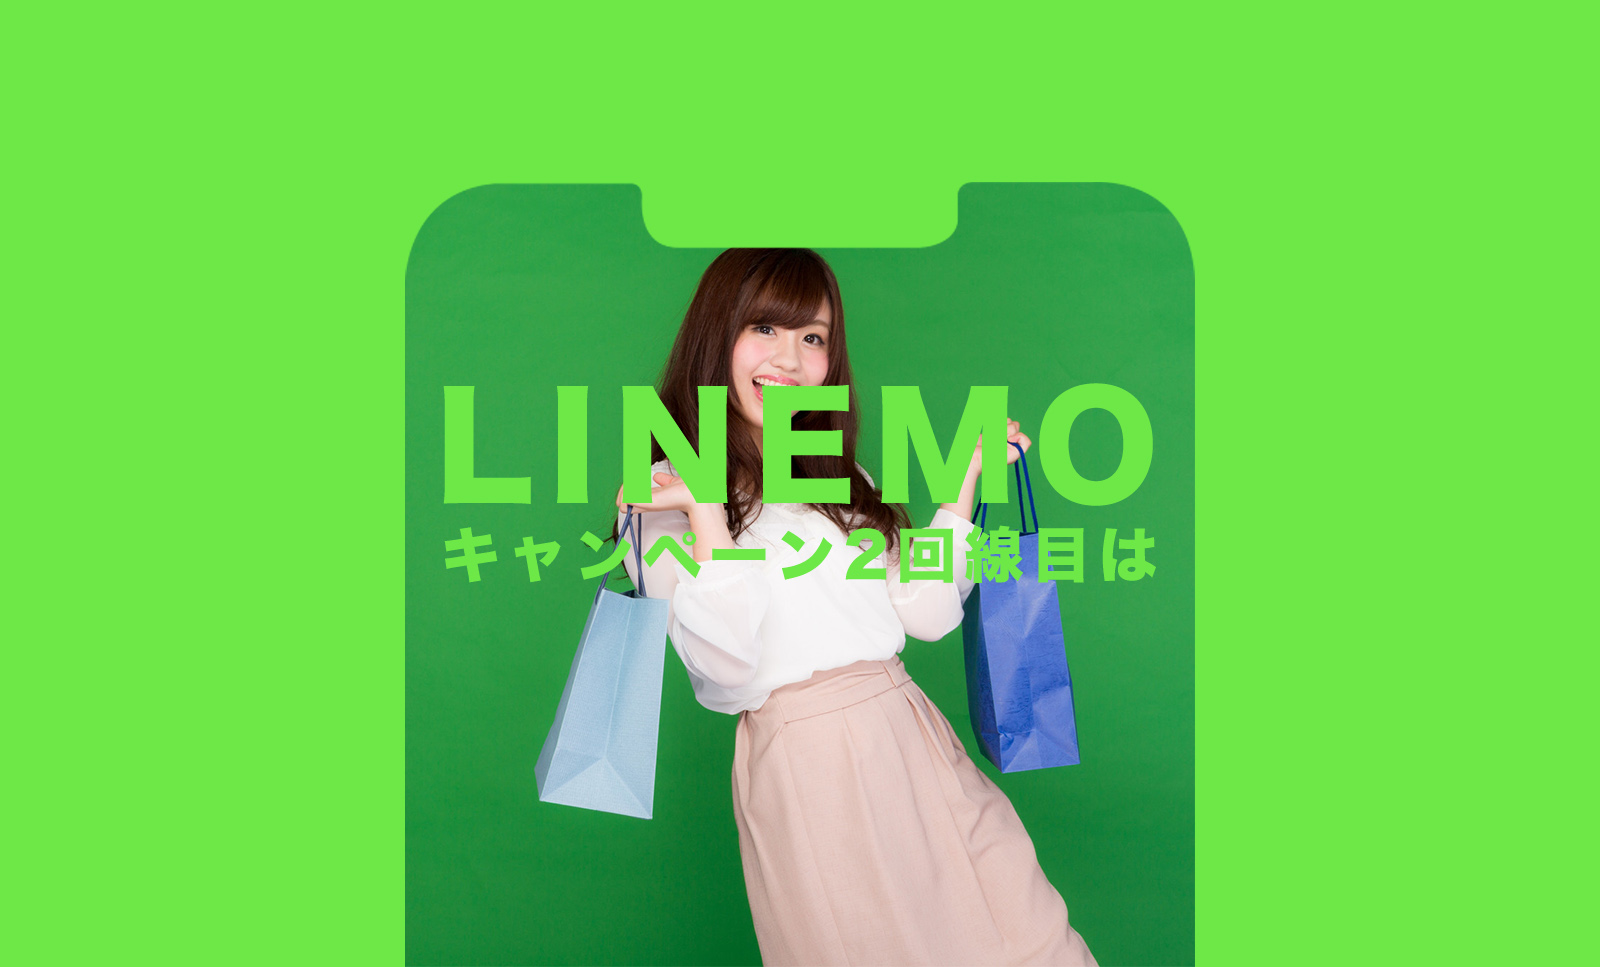 LINEMO(ラインモ)で2回線目や複数回線で利用できるキャンペーンやPayPay還元まとめ。のサムネイル画像